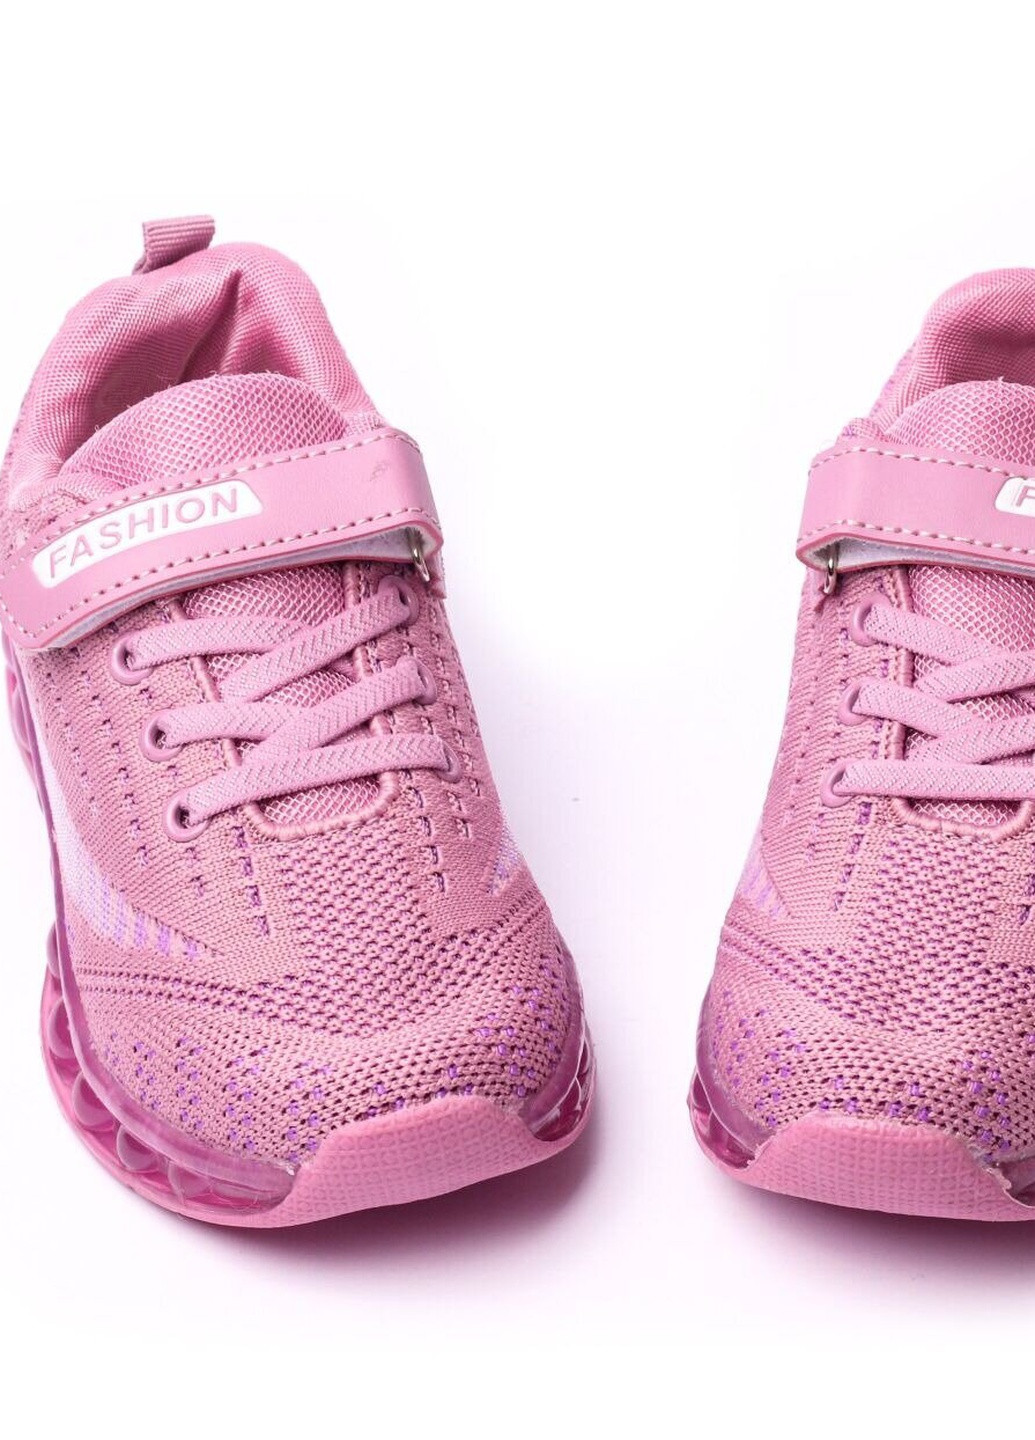 Фиолетовые демисезонные кроссовки детские, для девочки, 26 размер 2000903164265 Erra